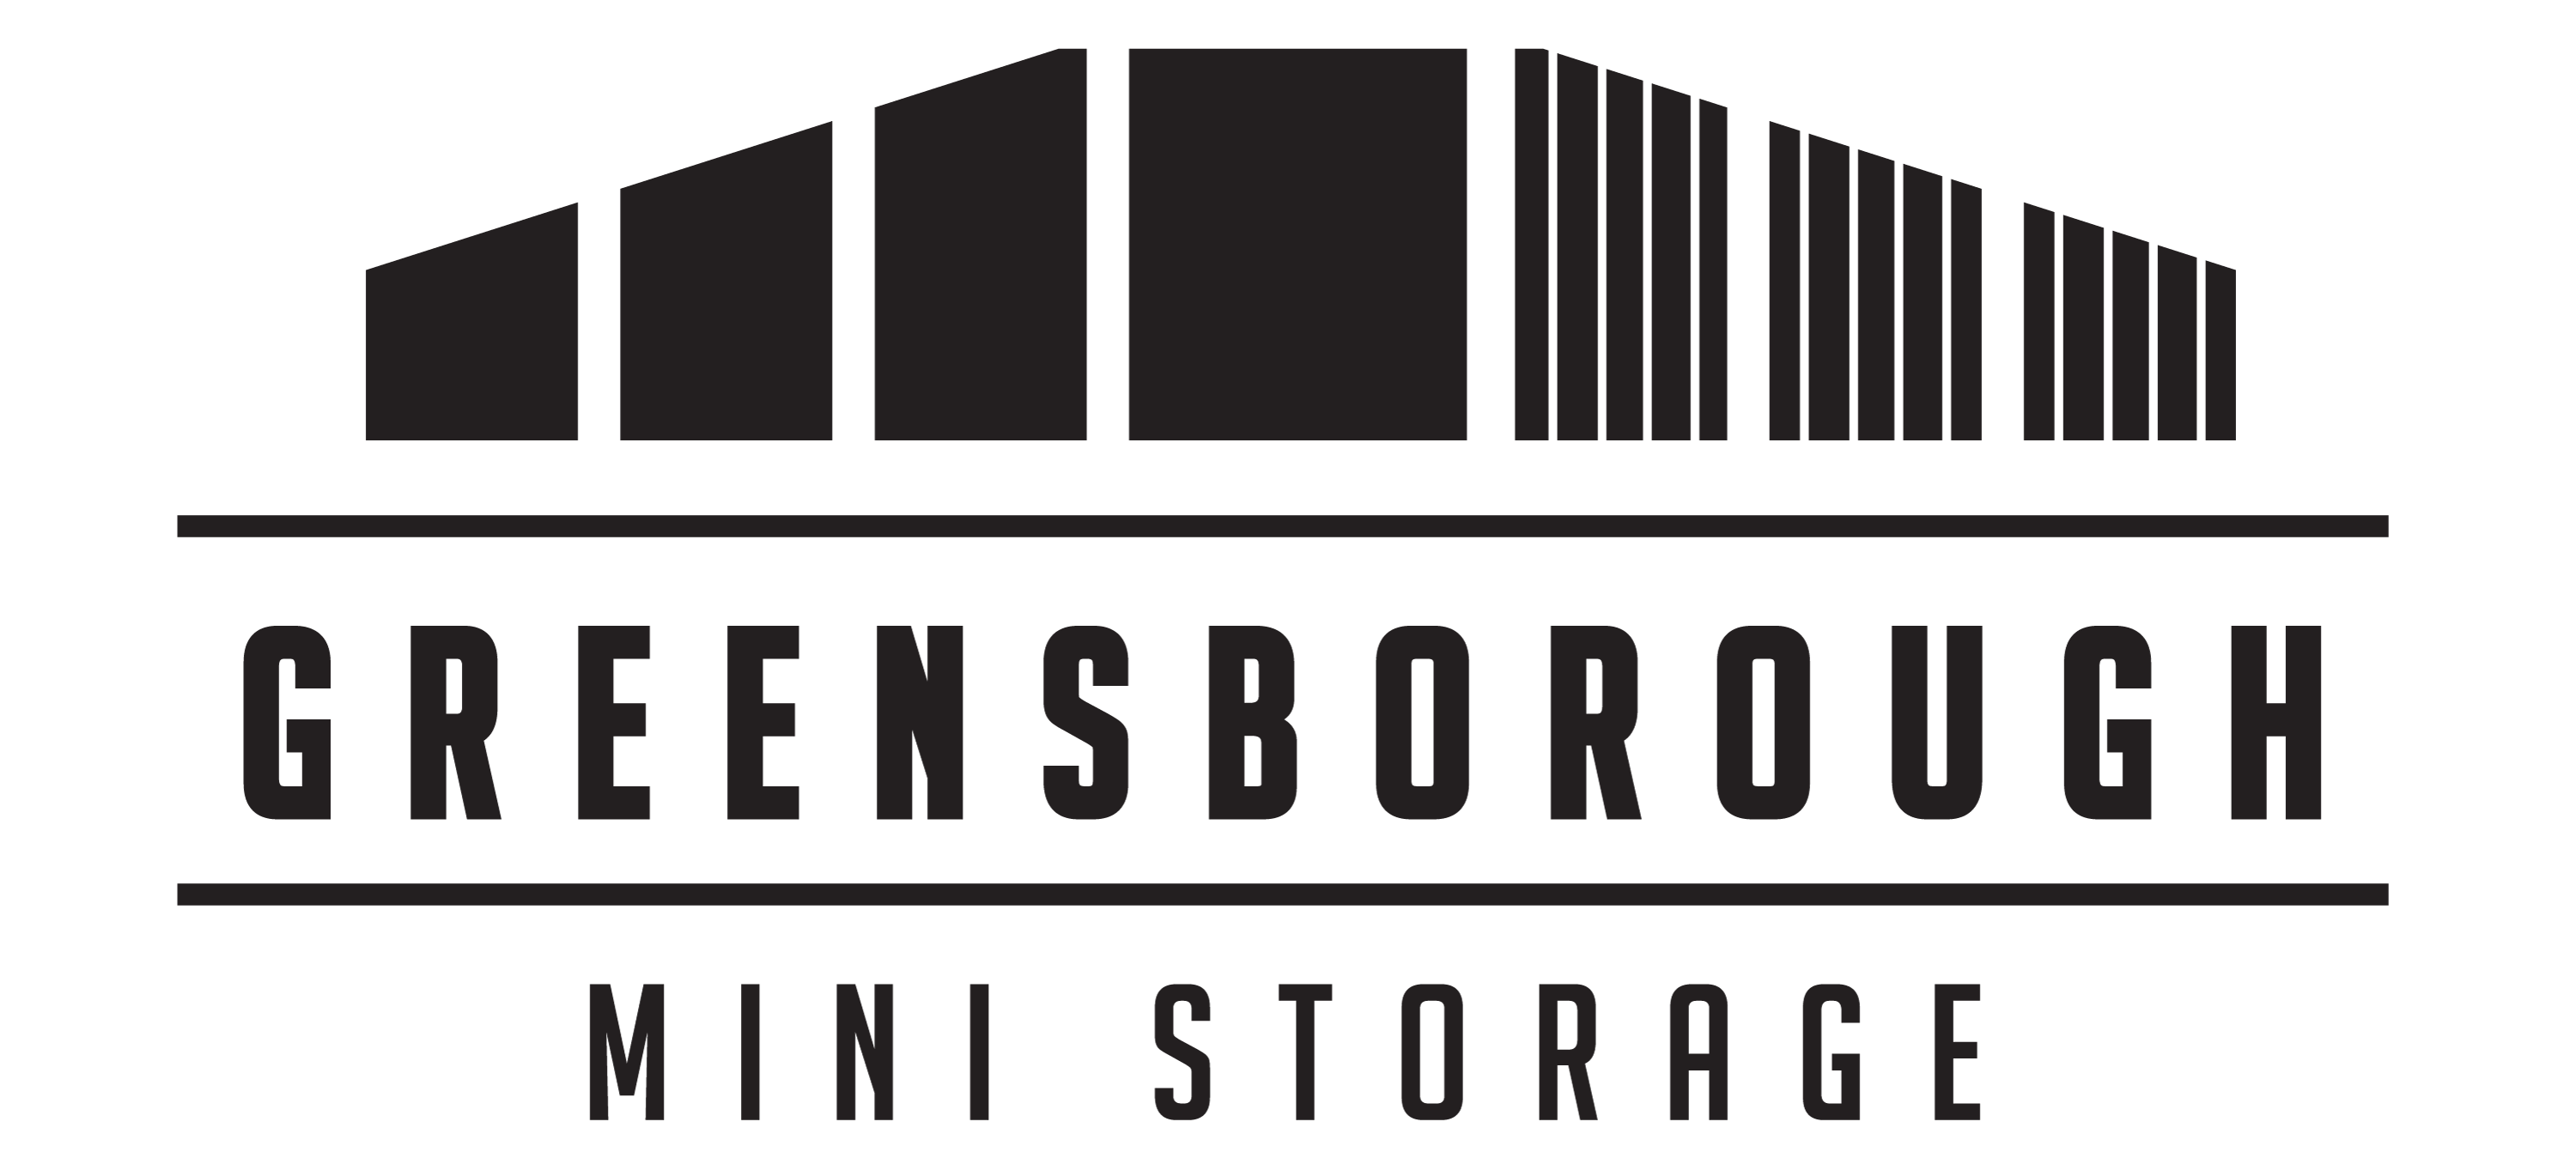 Greensborough Mini Storage in Jonesboro, AR